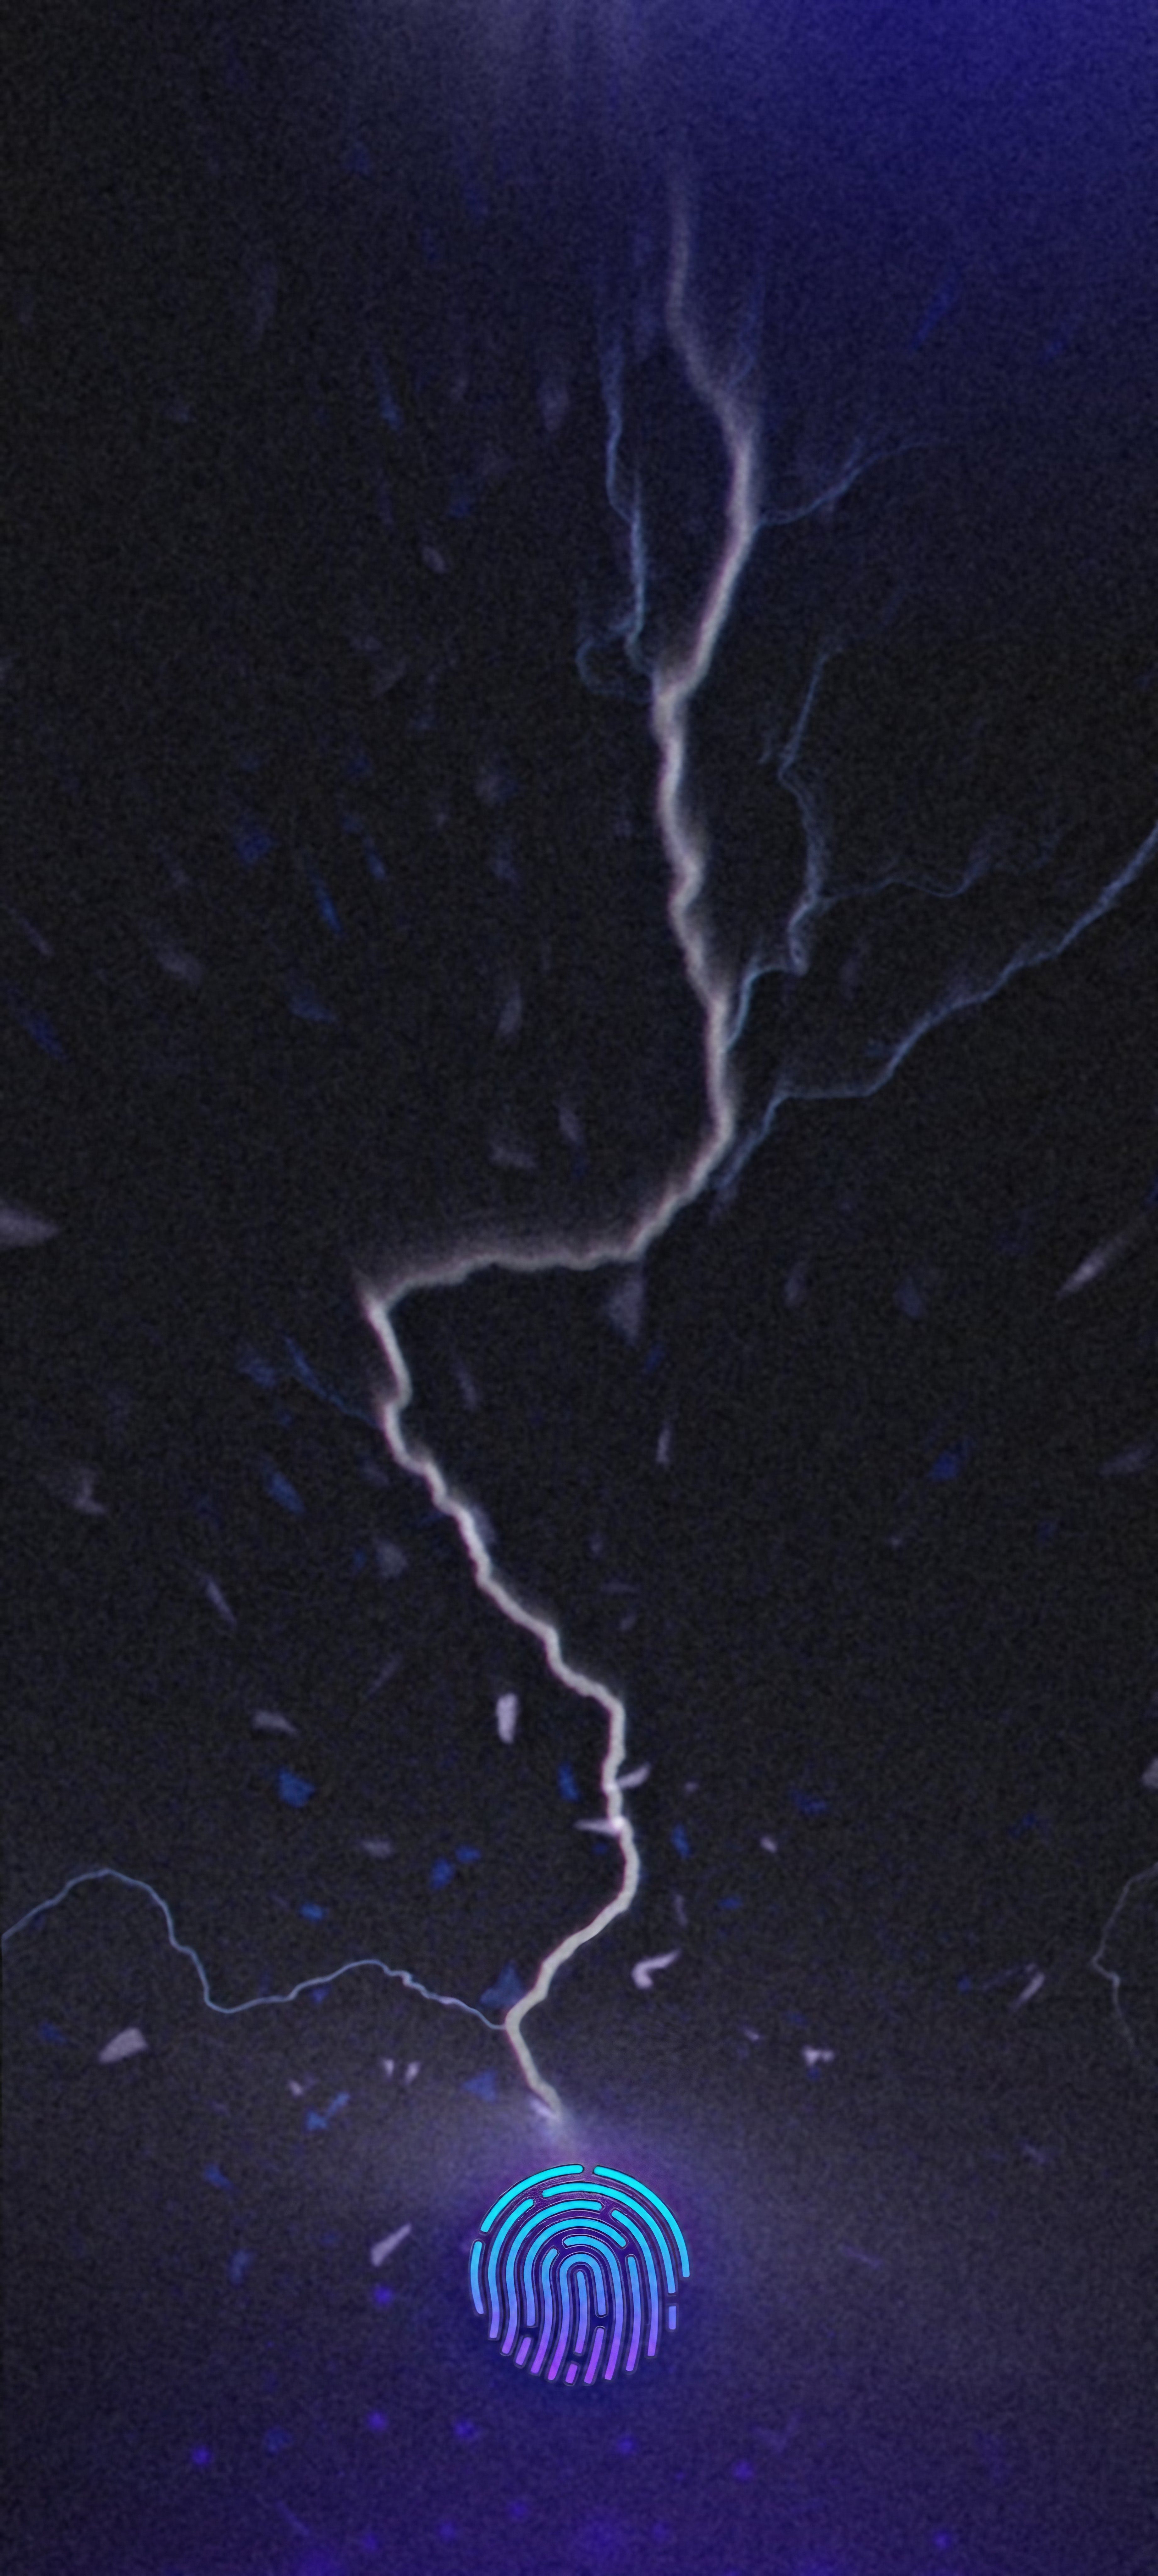 A lightning bolt strikes a digital fingerprint. - Lightning